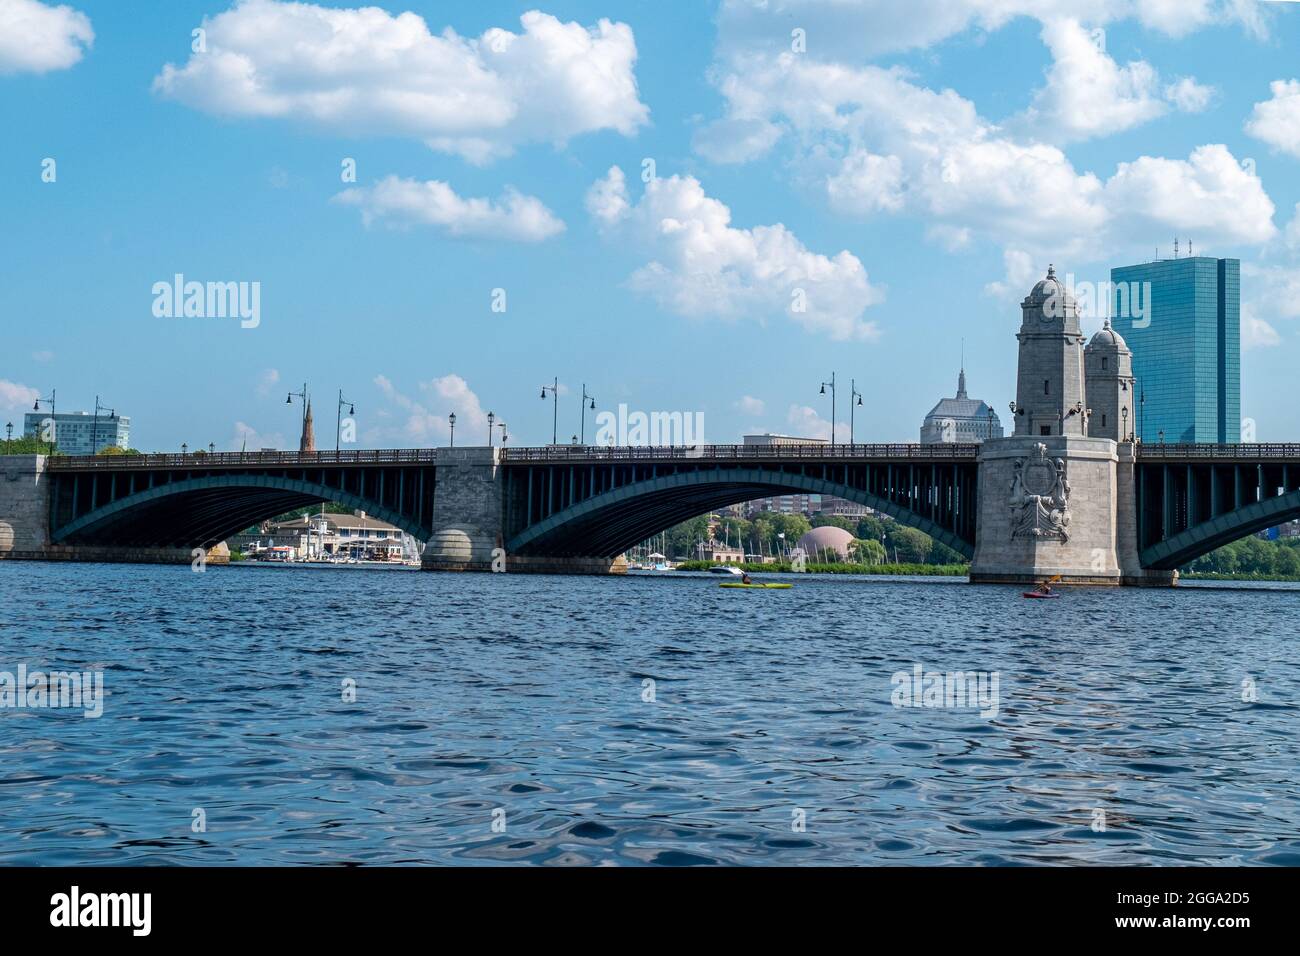 Die Longfellow Bridge ist eine Stahlrippenbogenbrücke, die den Charles River überspannt und Bostons Beacon Hill-Viertel mit dem Kendall Square-Gebiet verbindet Stockfoto